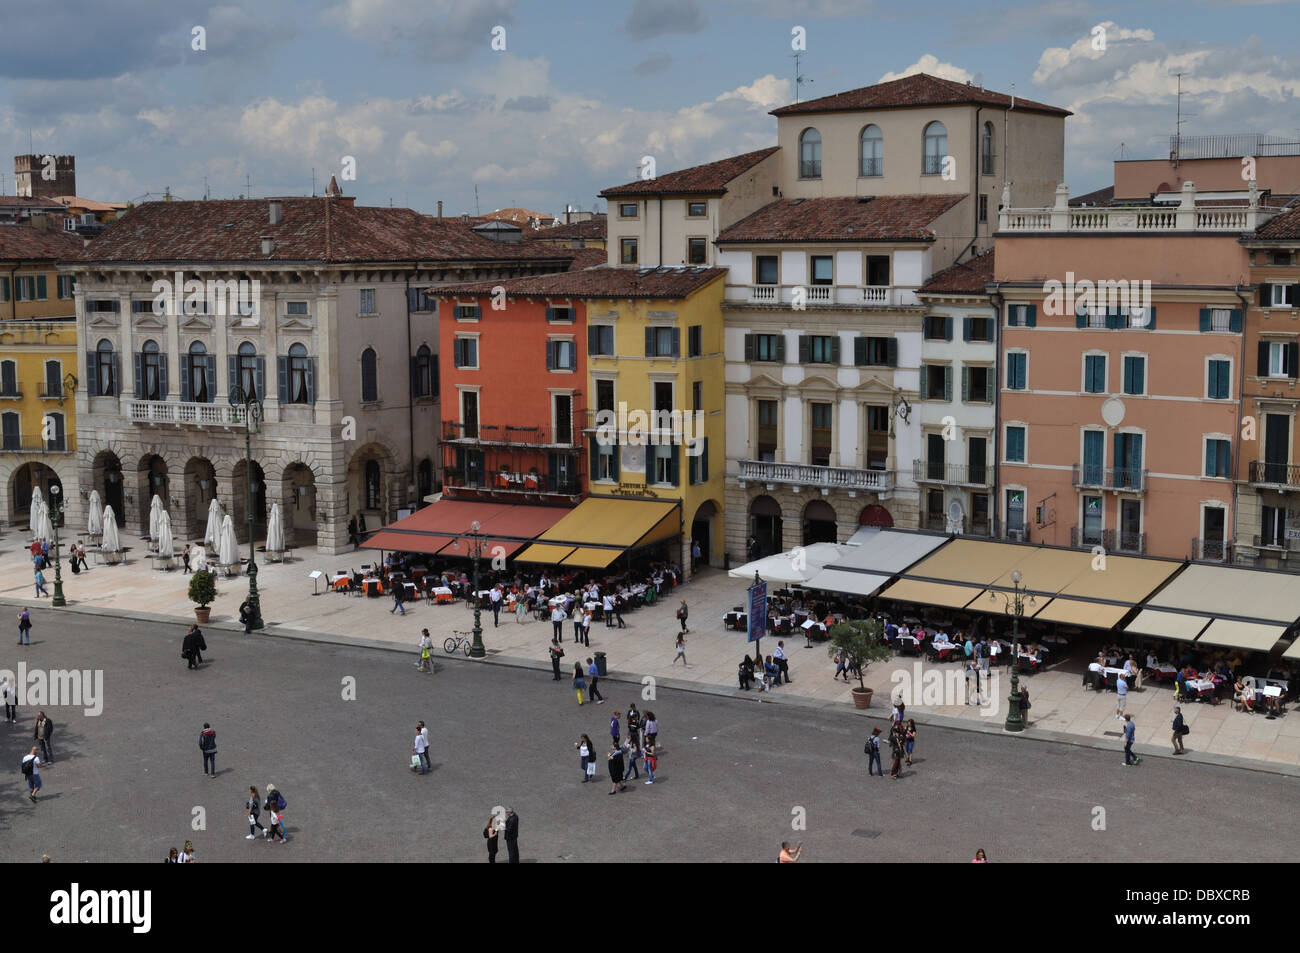 La Piazza Bra, en el centro de Verona, Italia. Foto de stock